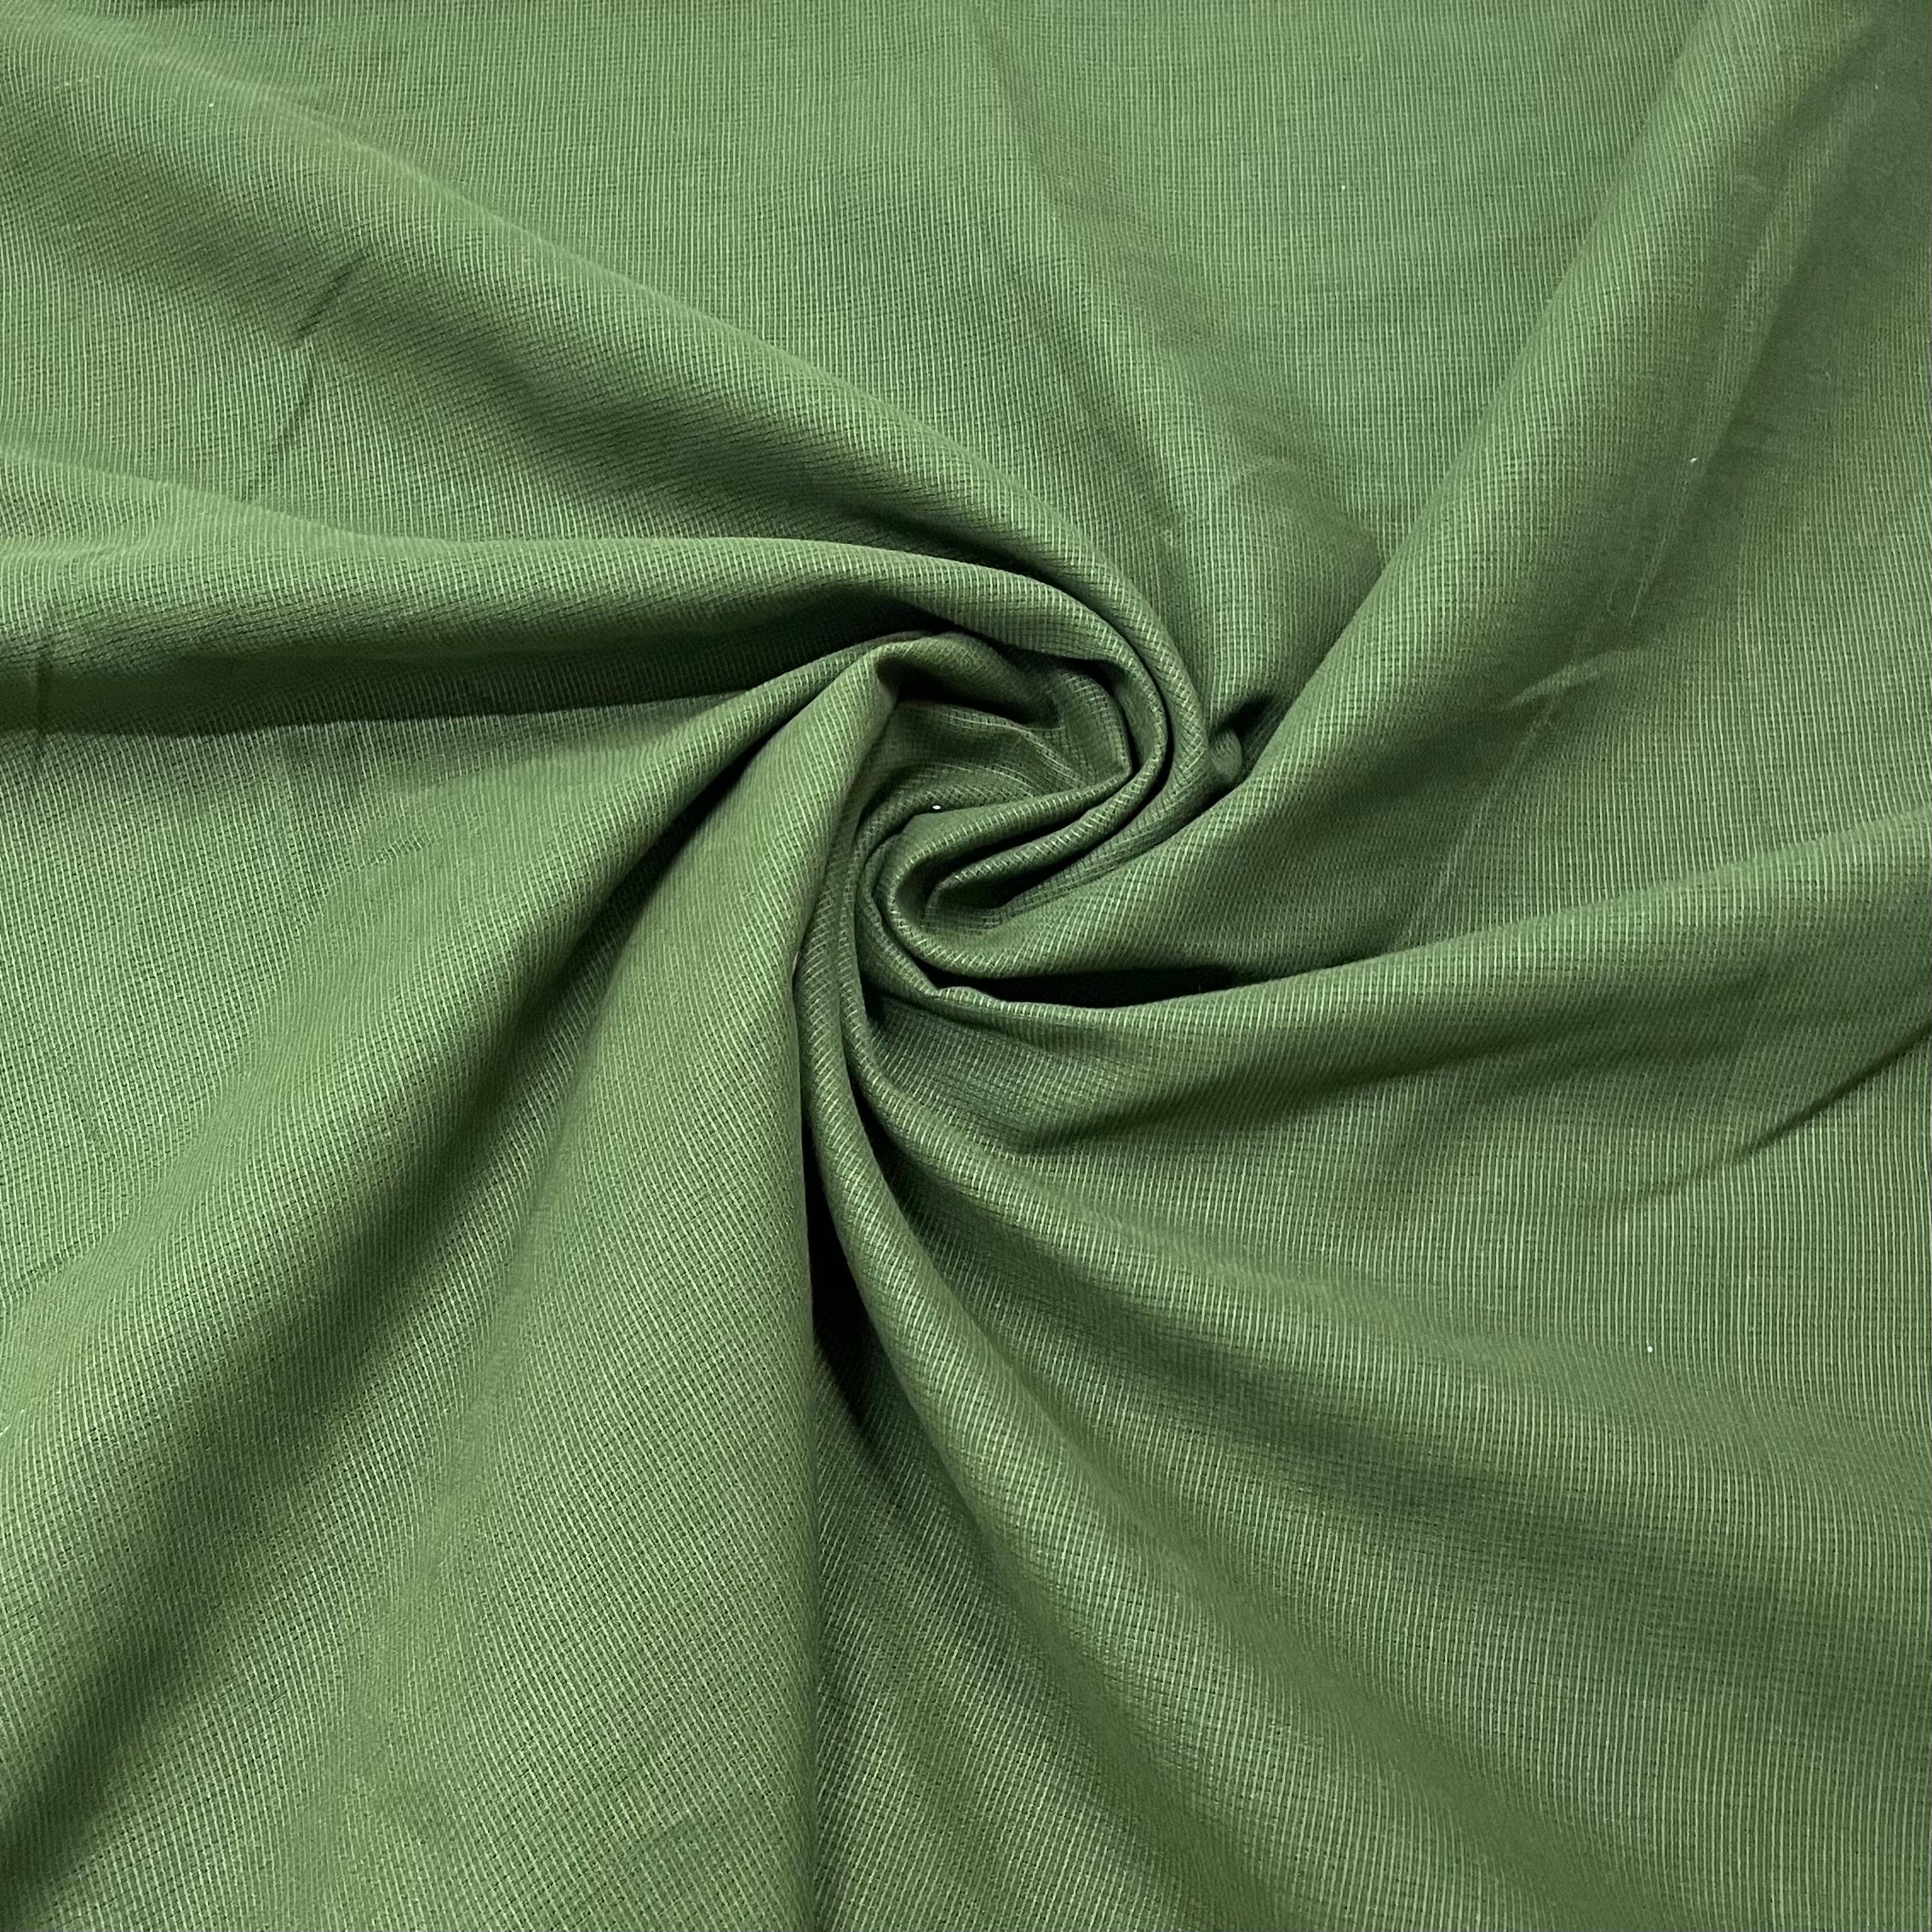 Forest Green color check blend cotton trousers pant for men – Punekar Cotton